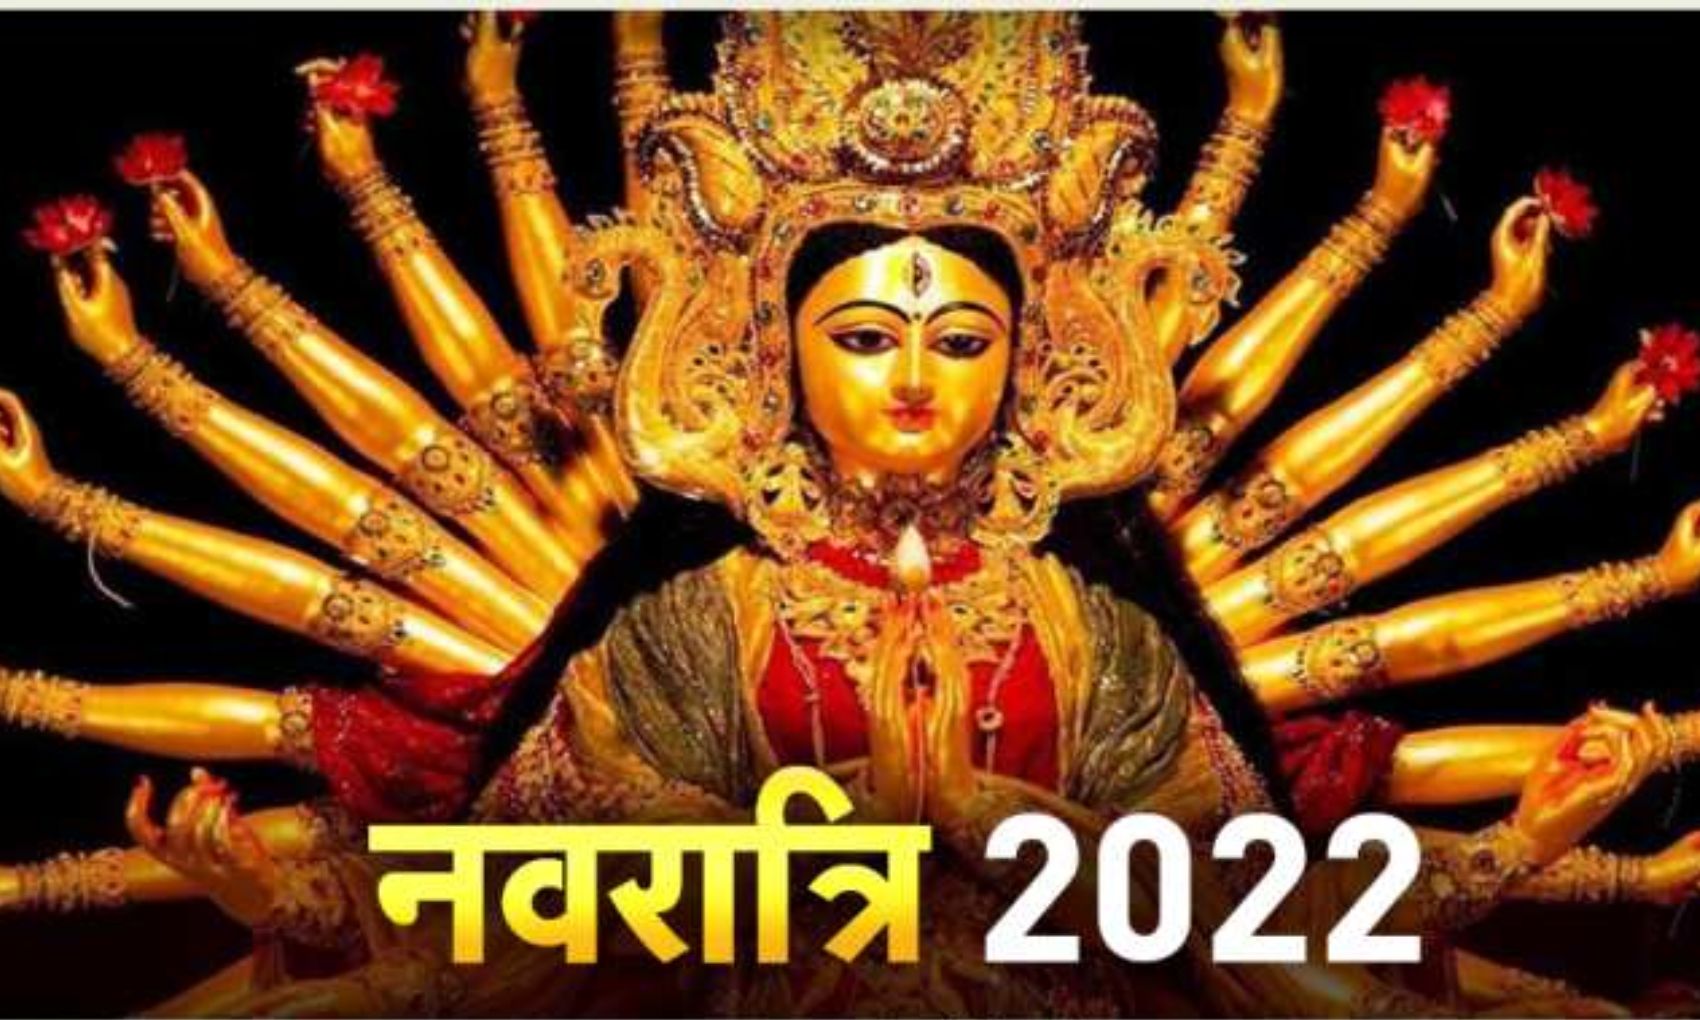 Navratri 2022: कंफ्यूजन करें दूर, इस दिन से शुरू हो रही है नवरात्रि, जानिए शुभ मुहूर्त और पूजन विधि